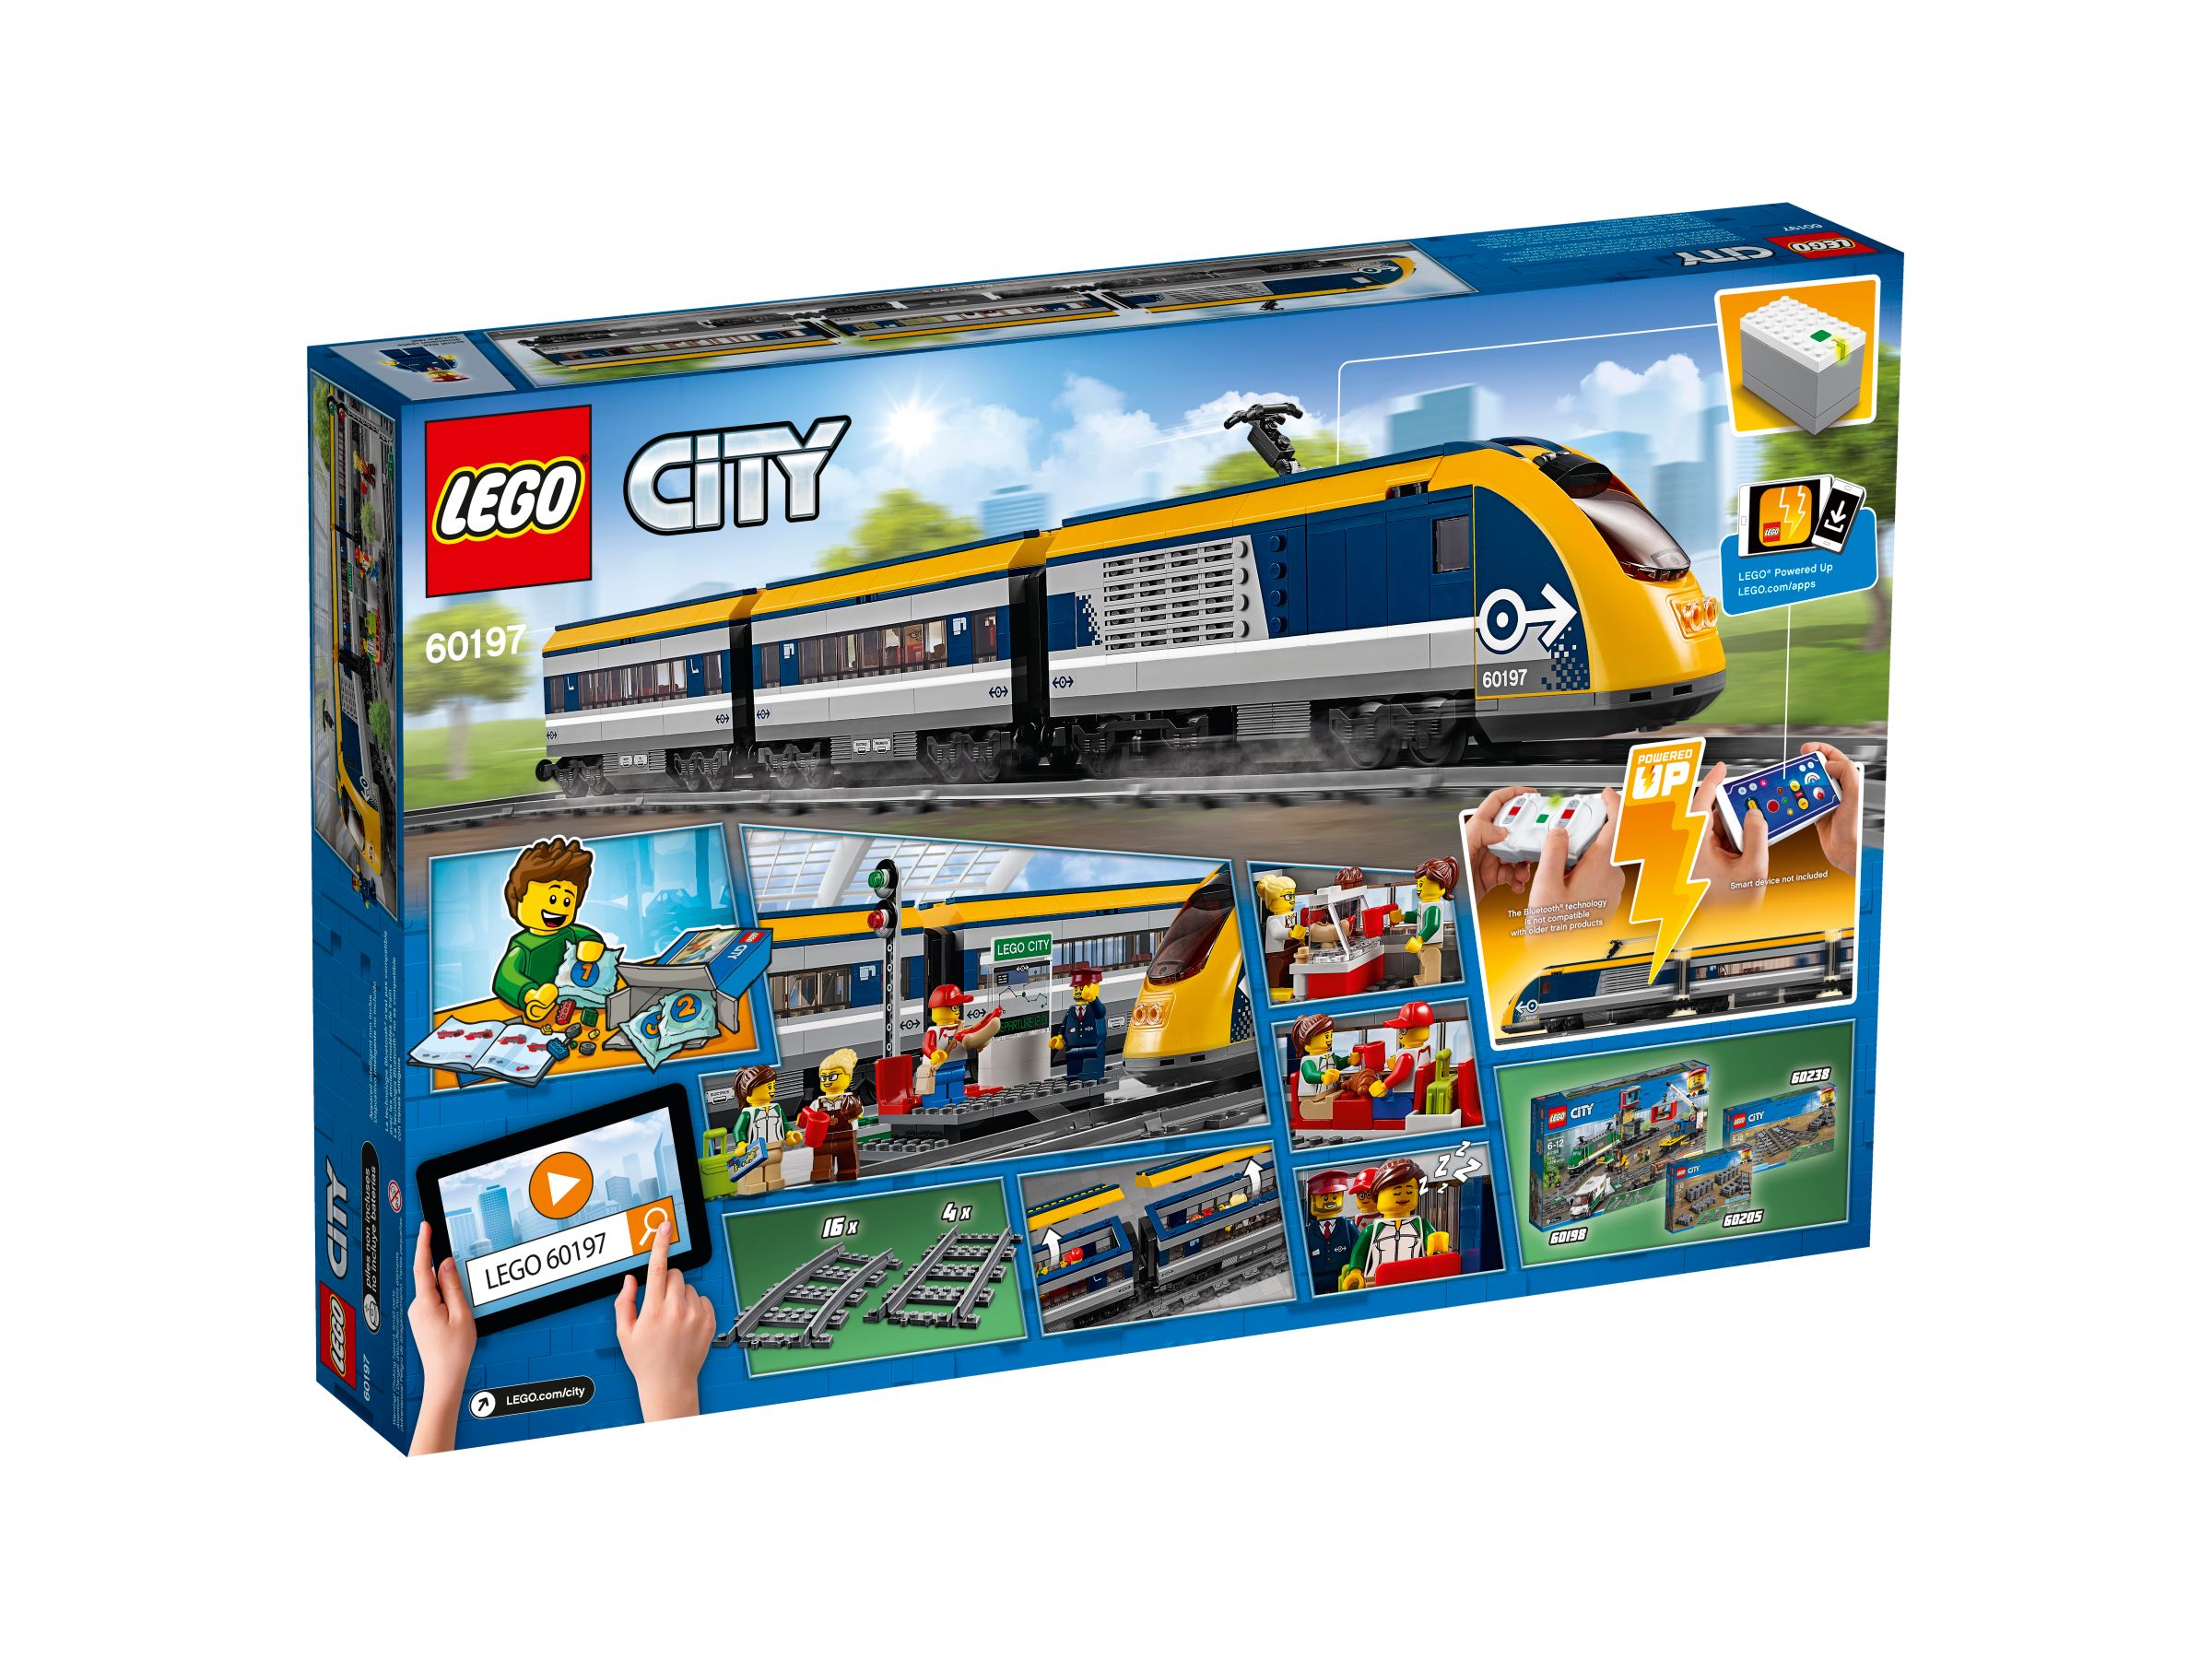 LEGO City 60197 Personenzug LEGO_60197_alt2.jpg